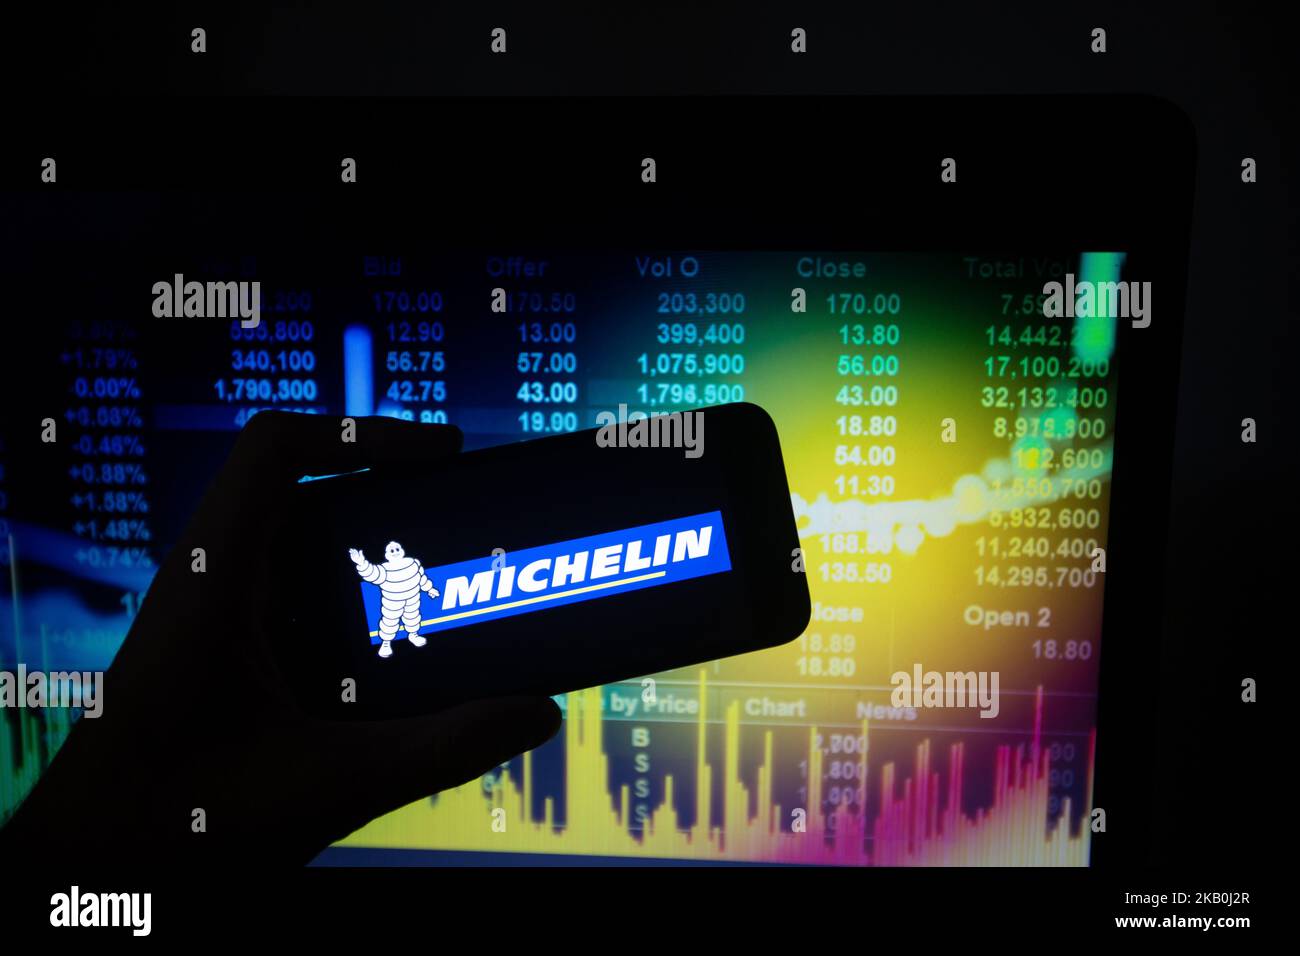 Il logo e l'uomo Michelin (Bibendum) della società francese di pneumatici Michelin, quotata nella CAC 40 di Parigi, sono riportati nell'illustrazione del 28 agosto 2018. Il CAC 40 rappresenta le 40 maggiori società francesi sul mercato azionario. (Foto di Alexander Pohl/NurPhoto) Foto Stock